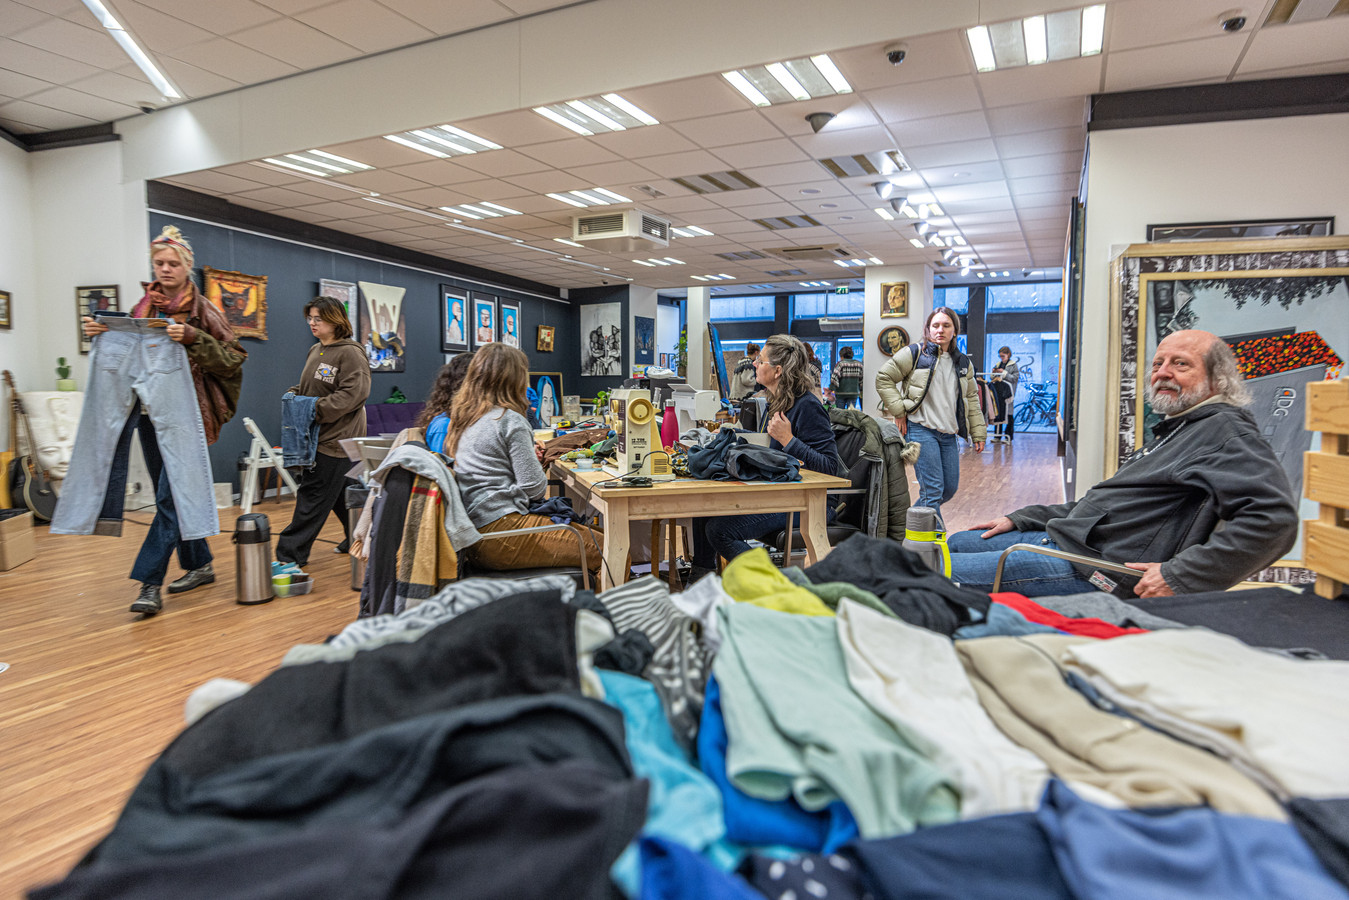 rijstwijn Bloody Rimpelingen Klimaatbeweging laat in Zwolle tegengeluid horen op Green Friday: 'Op  andere manier goedkope kleding kopen' | Foto | tubantia.nl